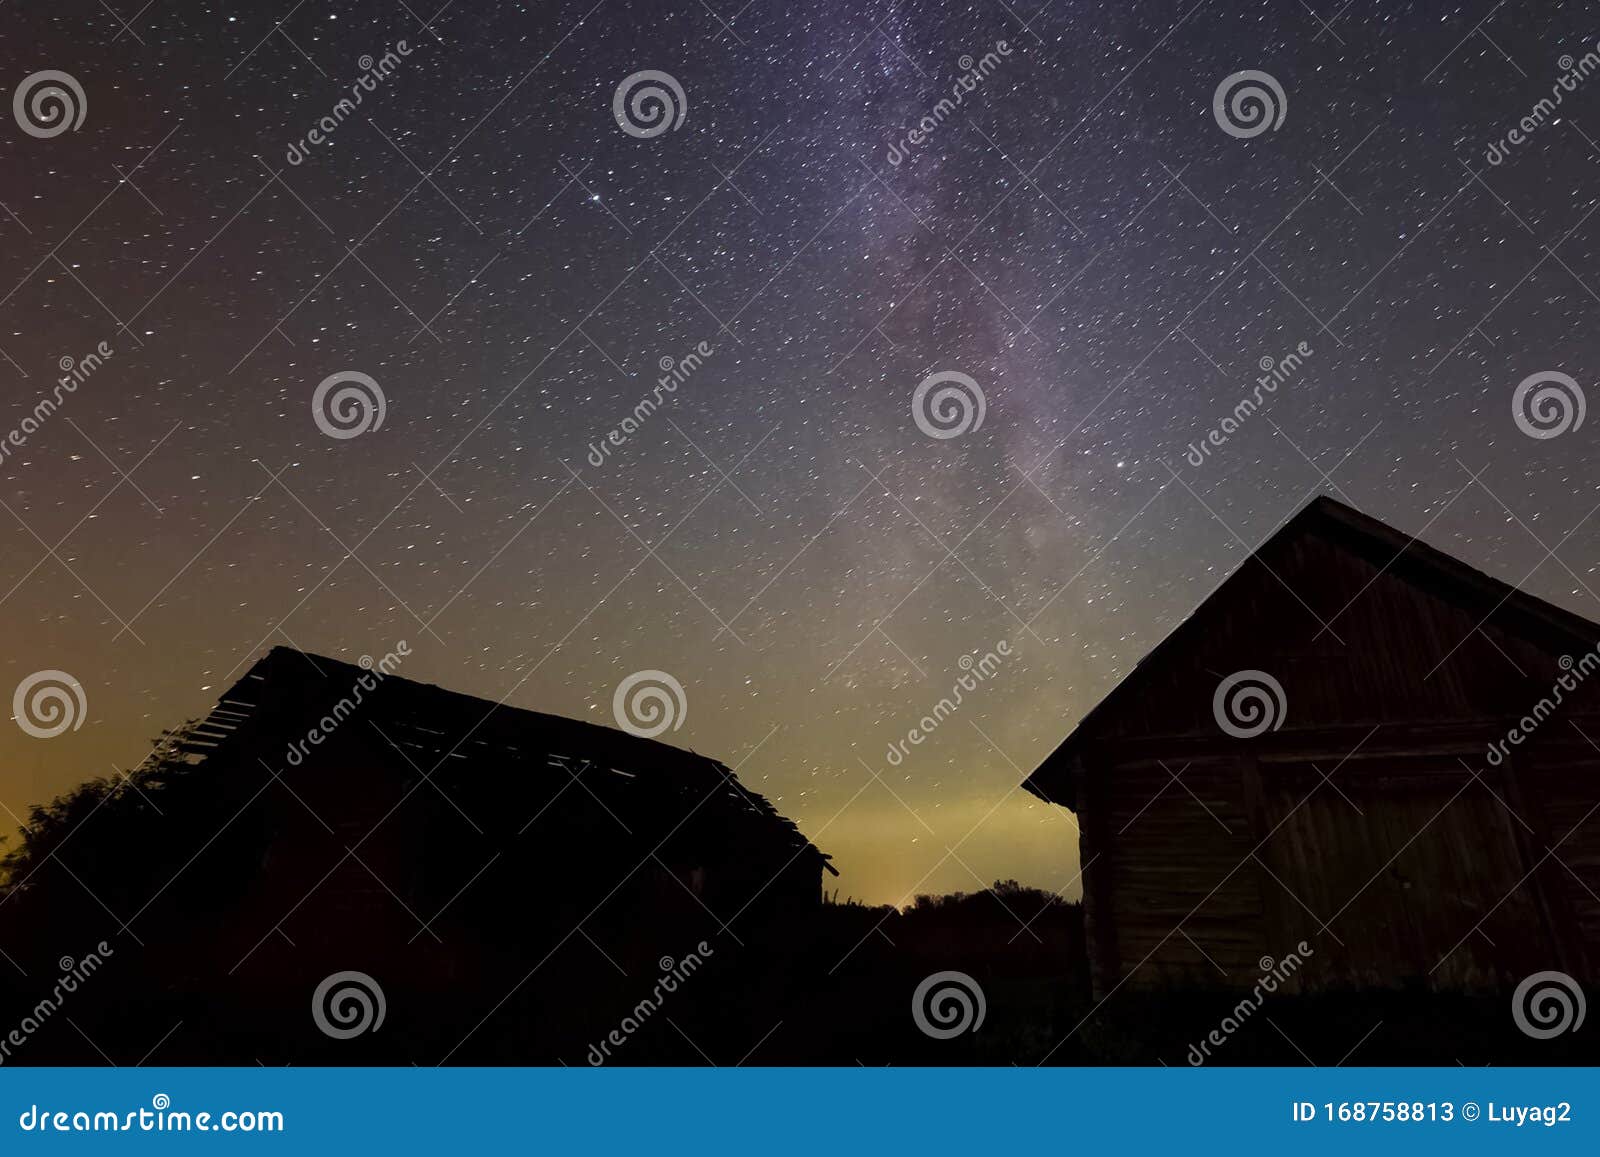 村子的木屋上星空星空背景夜空与银河库存图片 图片包括有无限 空间 科学 自然 星形 抽象